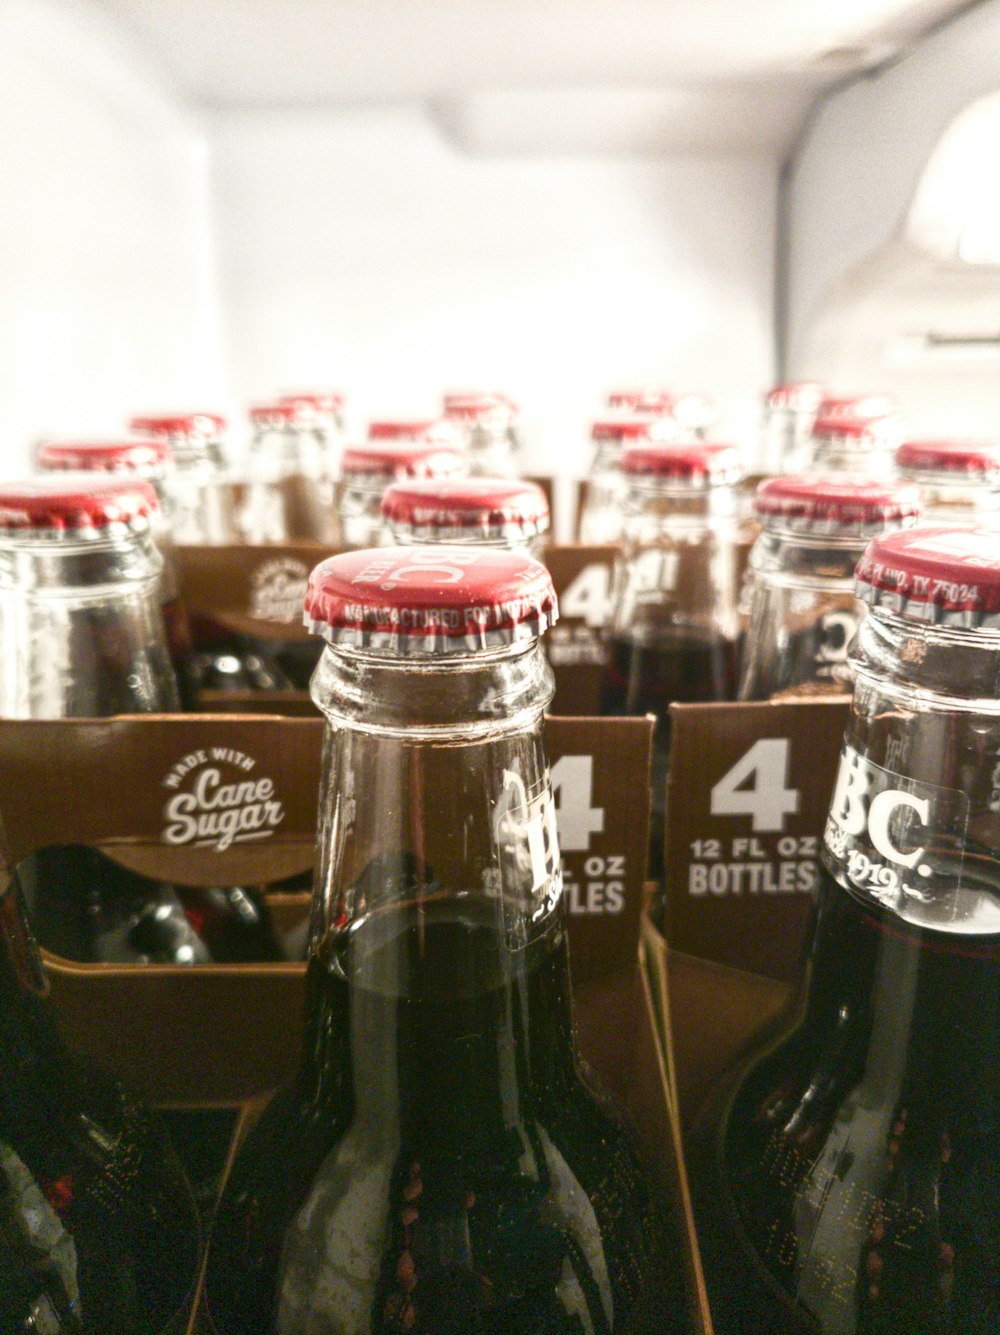 bouteilles de coca cola sur l’étagère